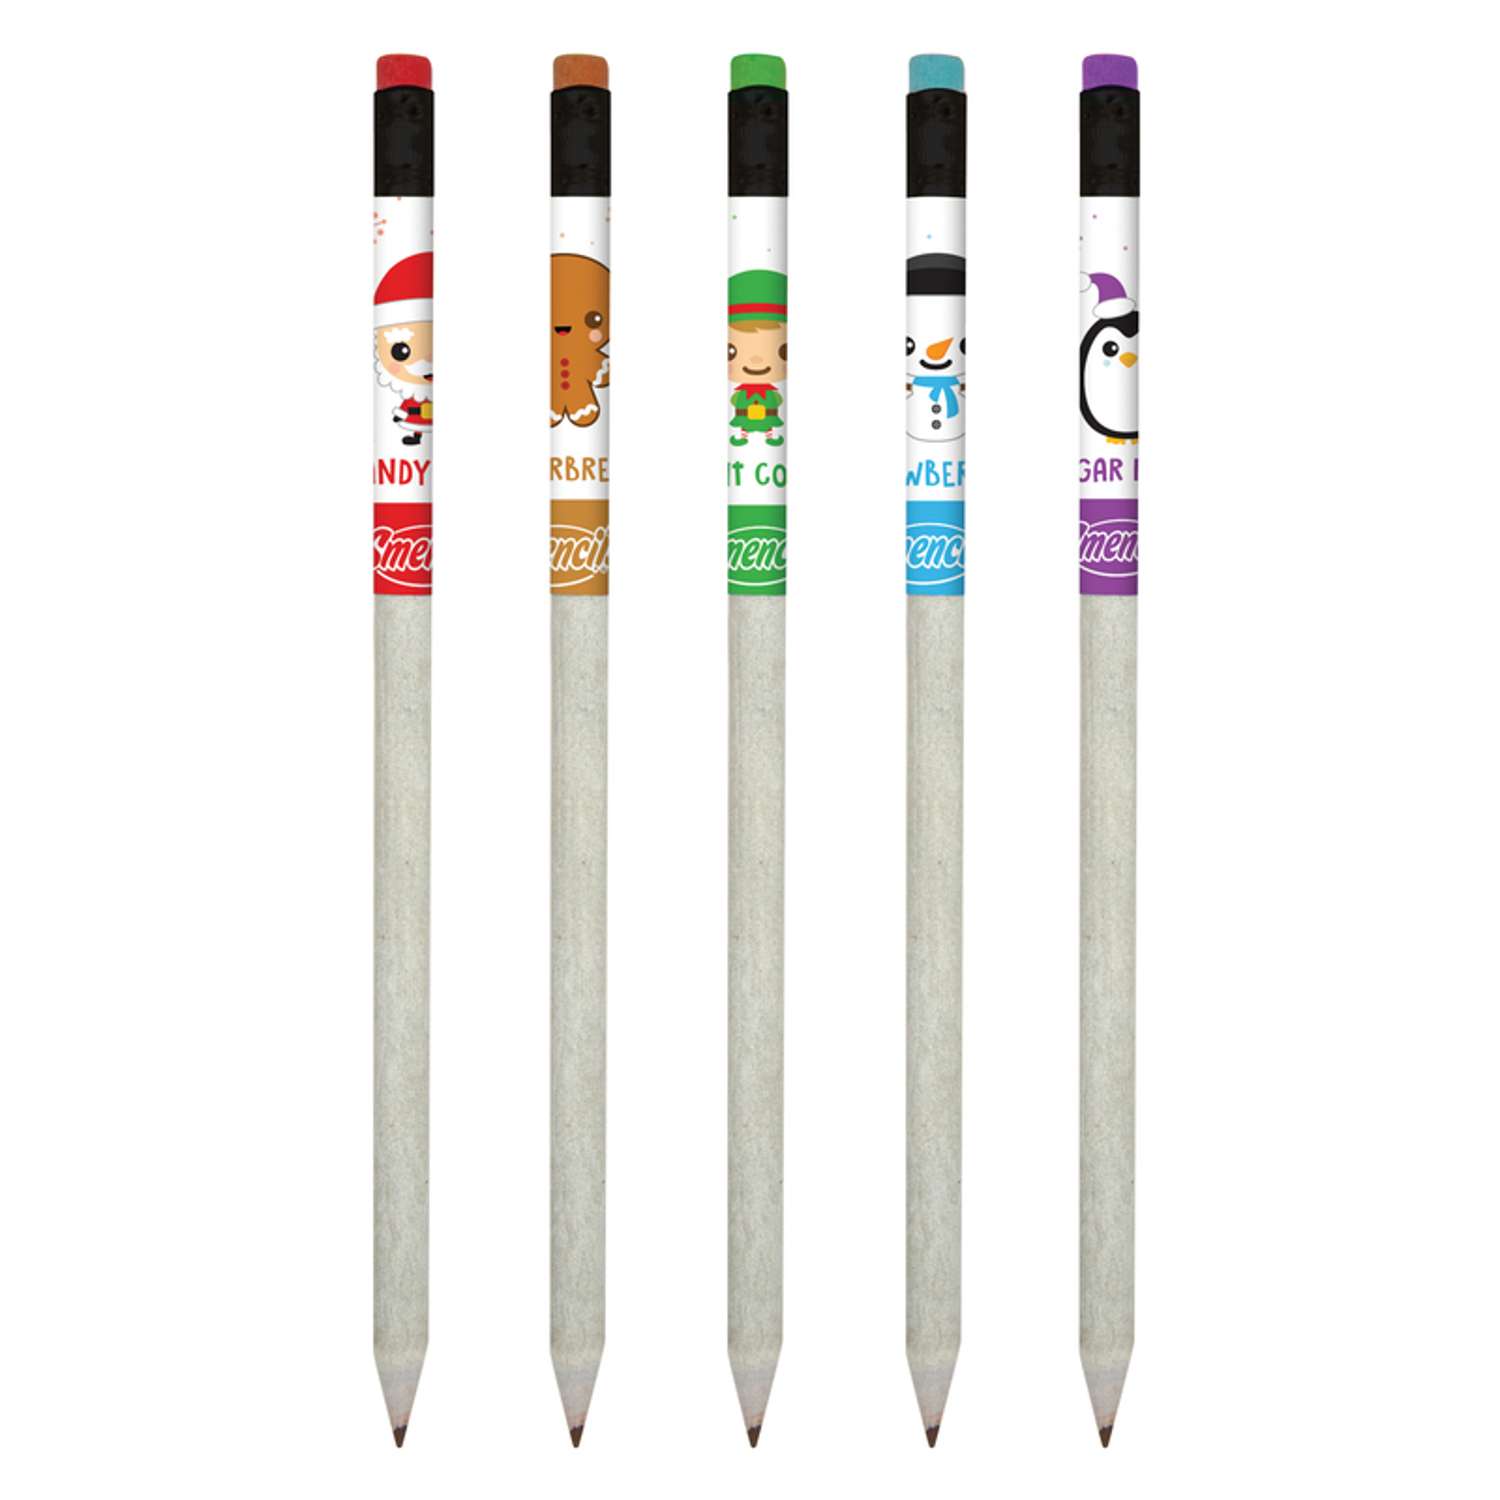 Scentco Smencils #2HB Scented Pencil 5 pk - Ace Hardware